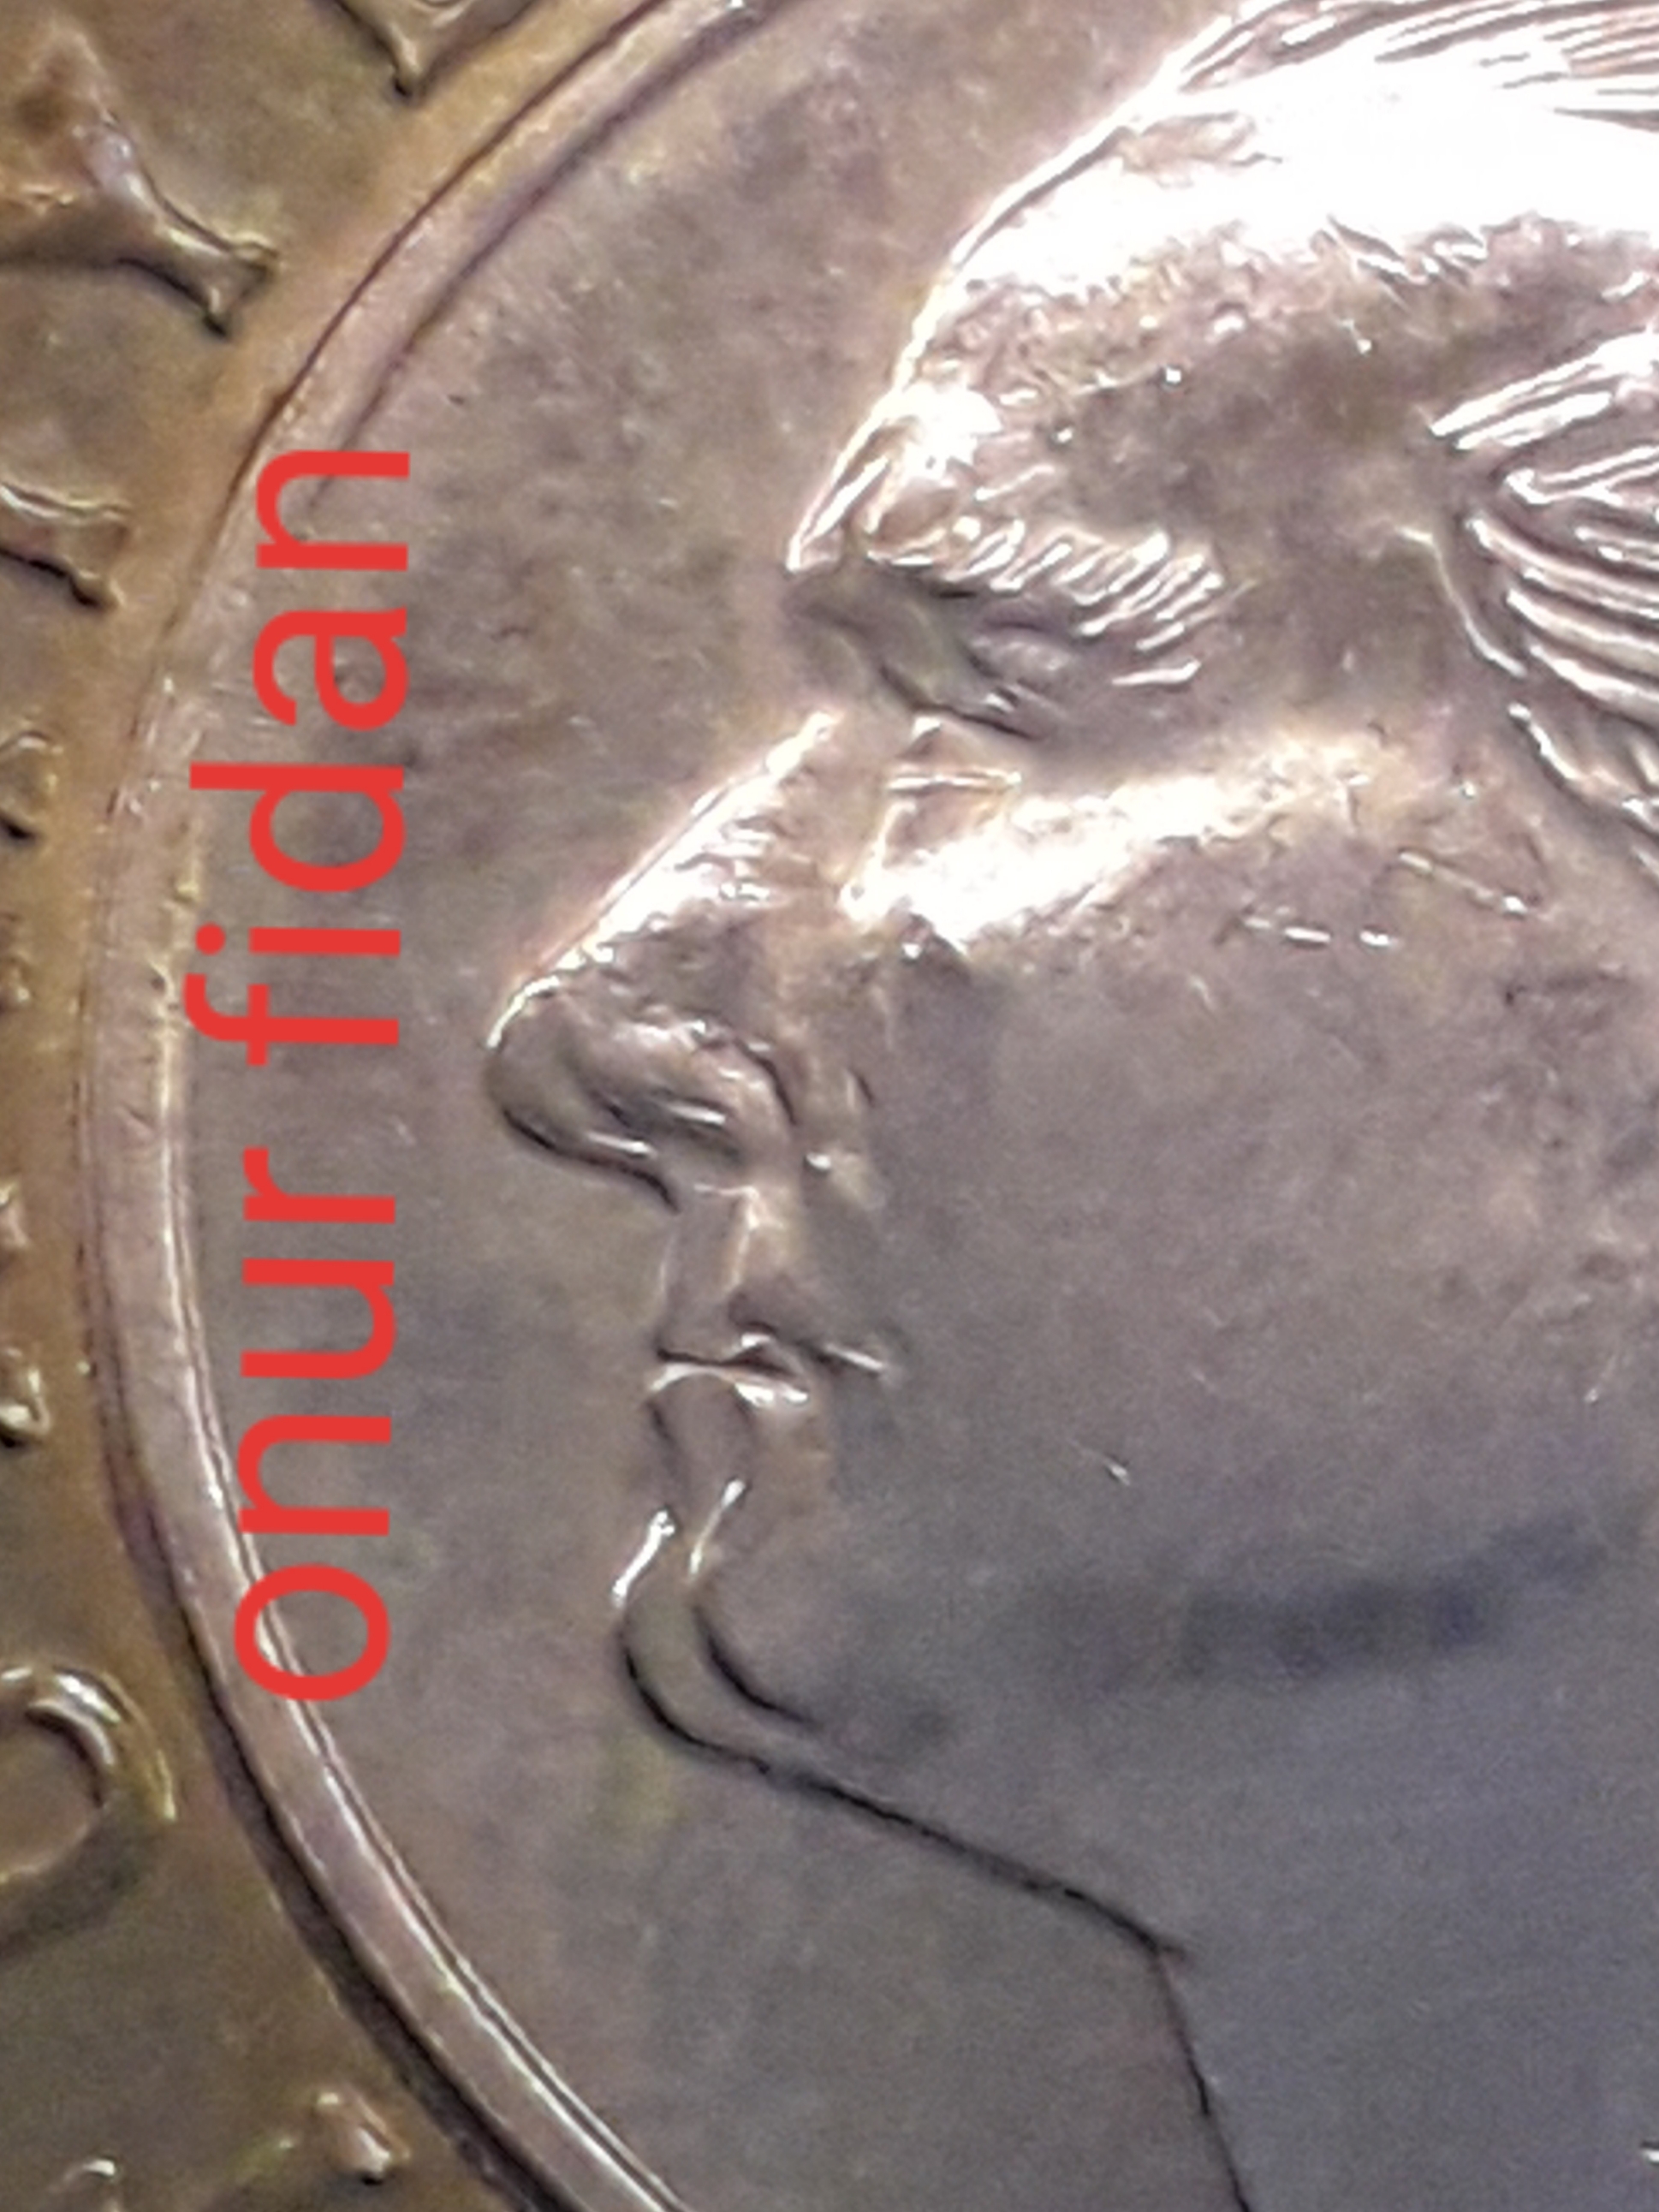 1 Lira (Yüz Kısmında Çift Baskı) 2015 Ön Yüz